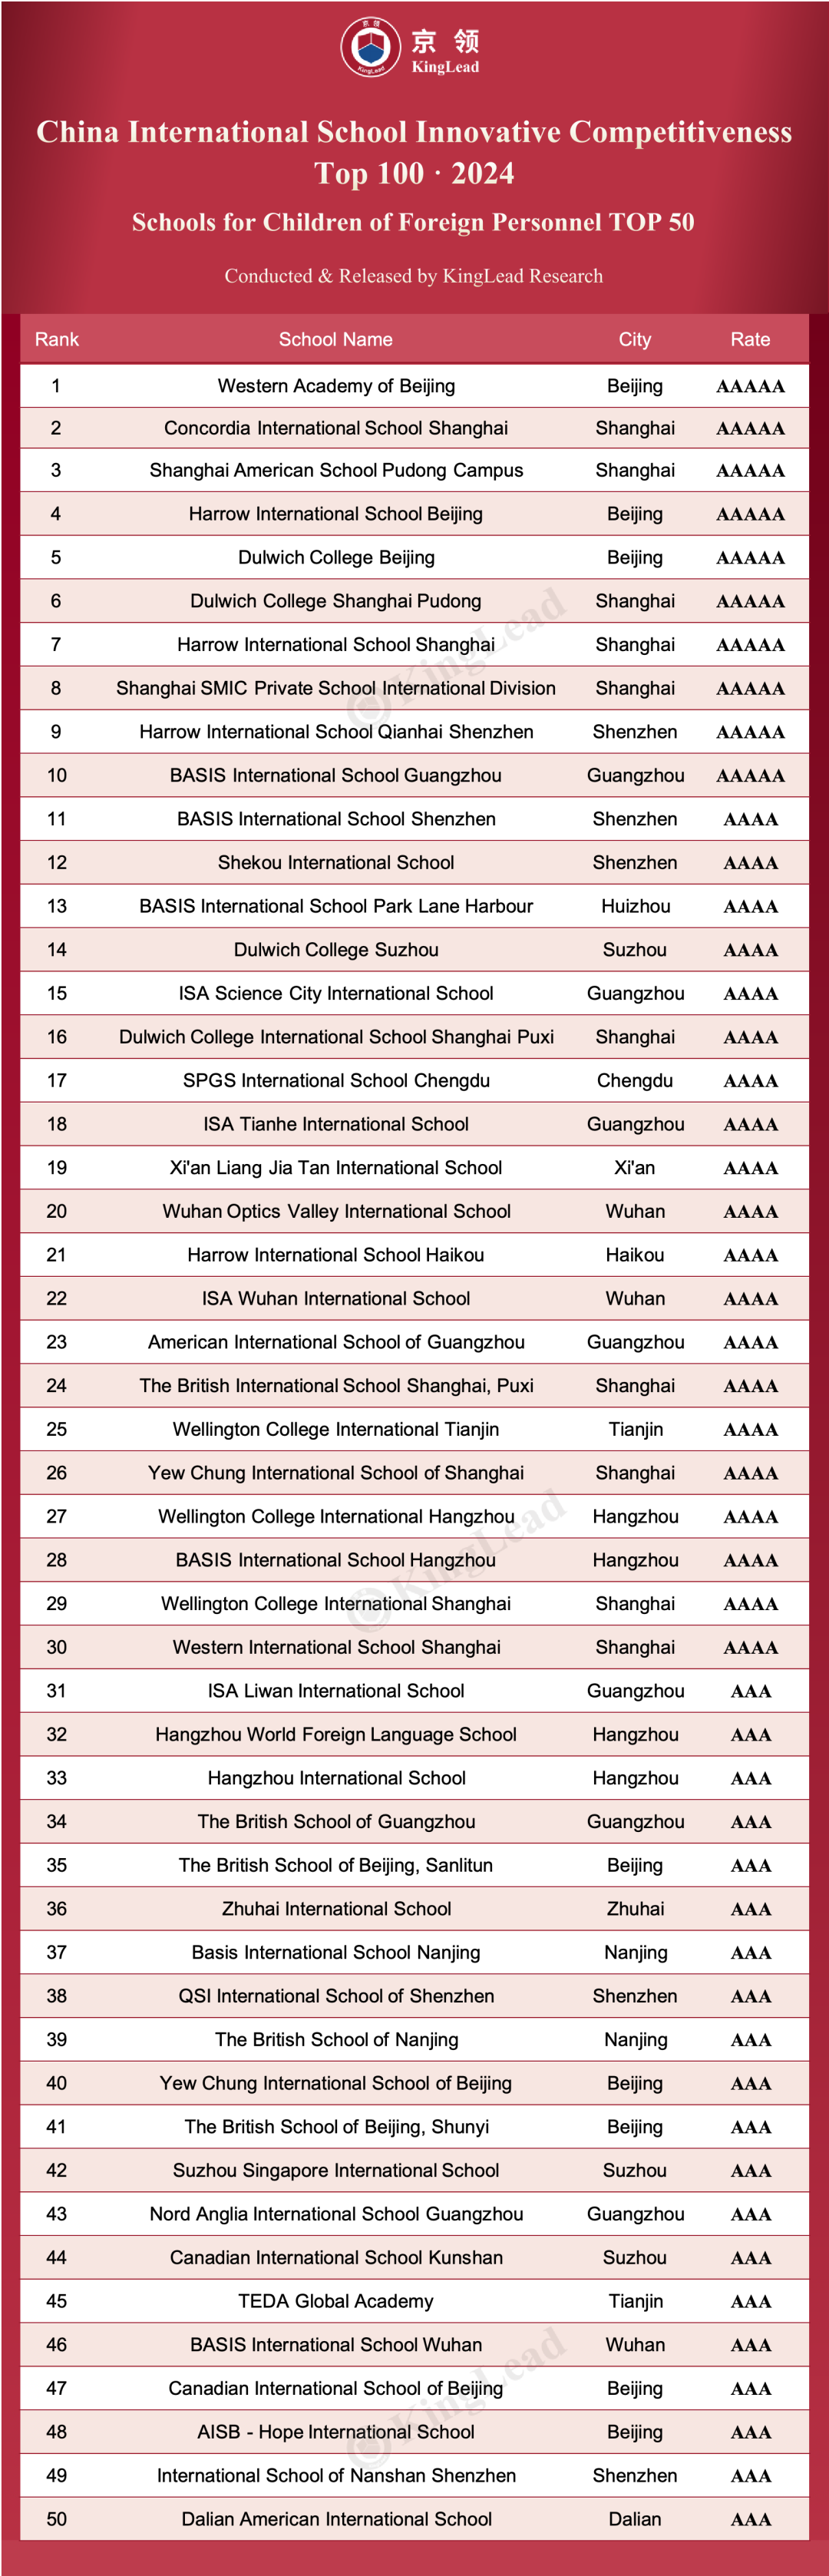 喜讯！哈罗国际深圳稳居京领中国国际学校创新竞争力榜大湾区第一